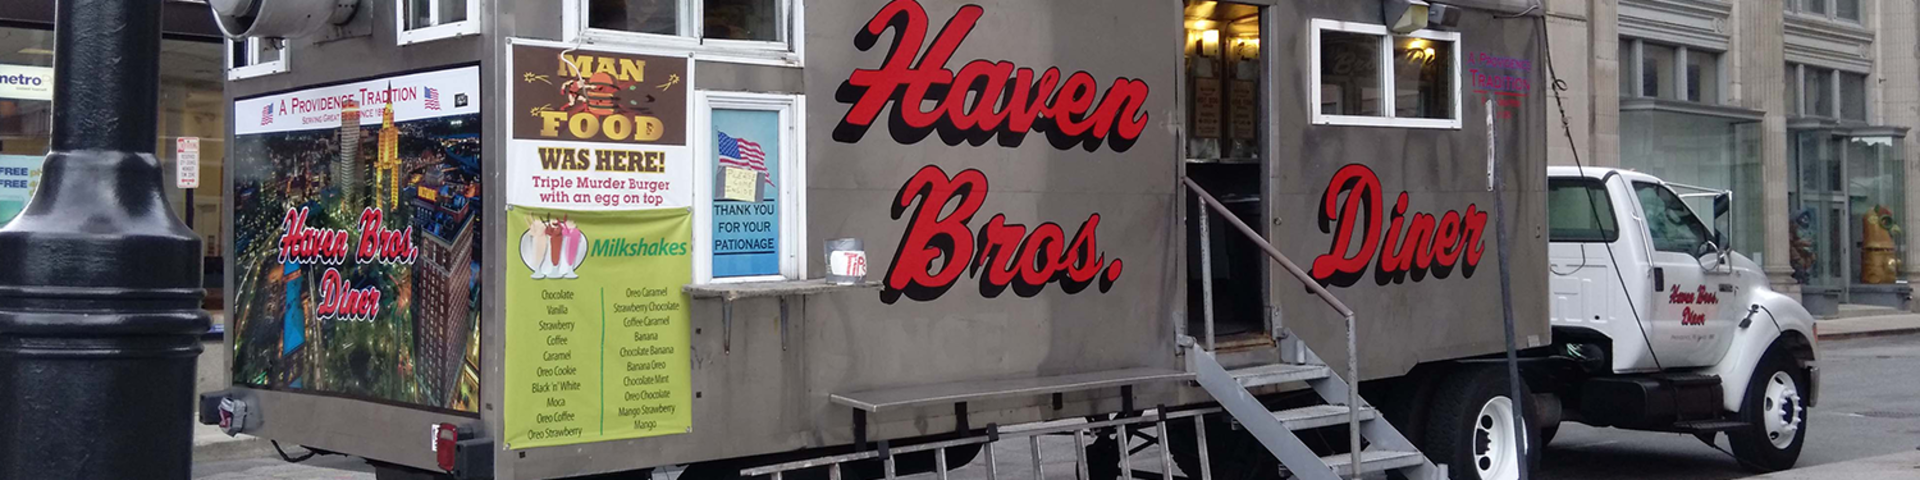 Haven Bros.